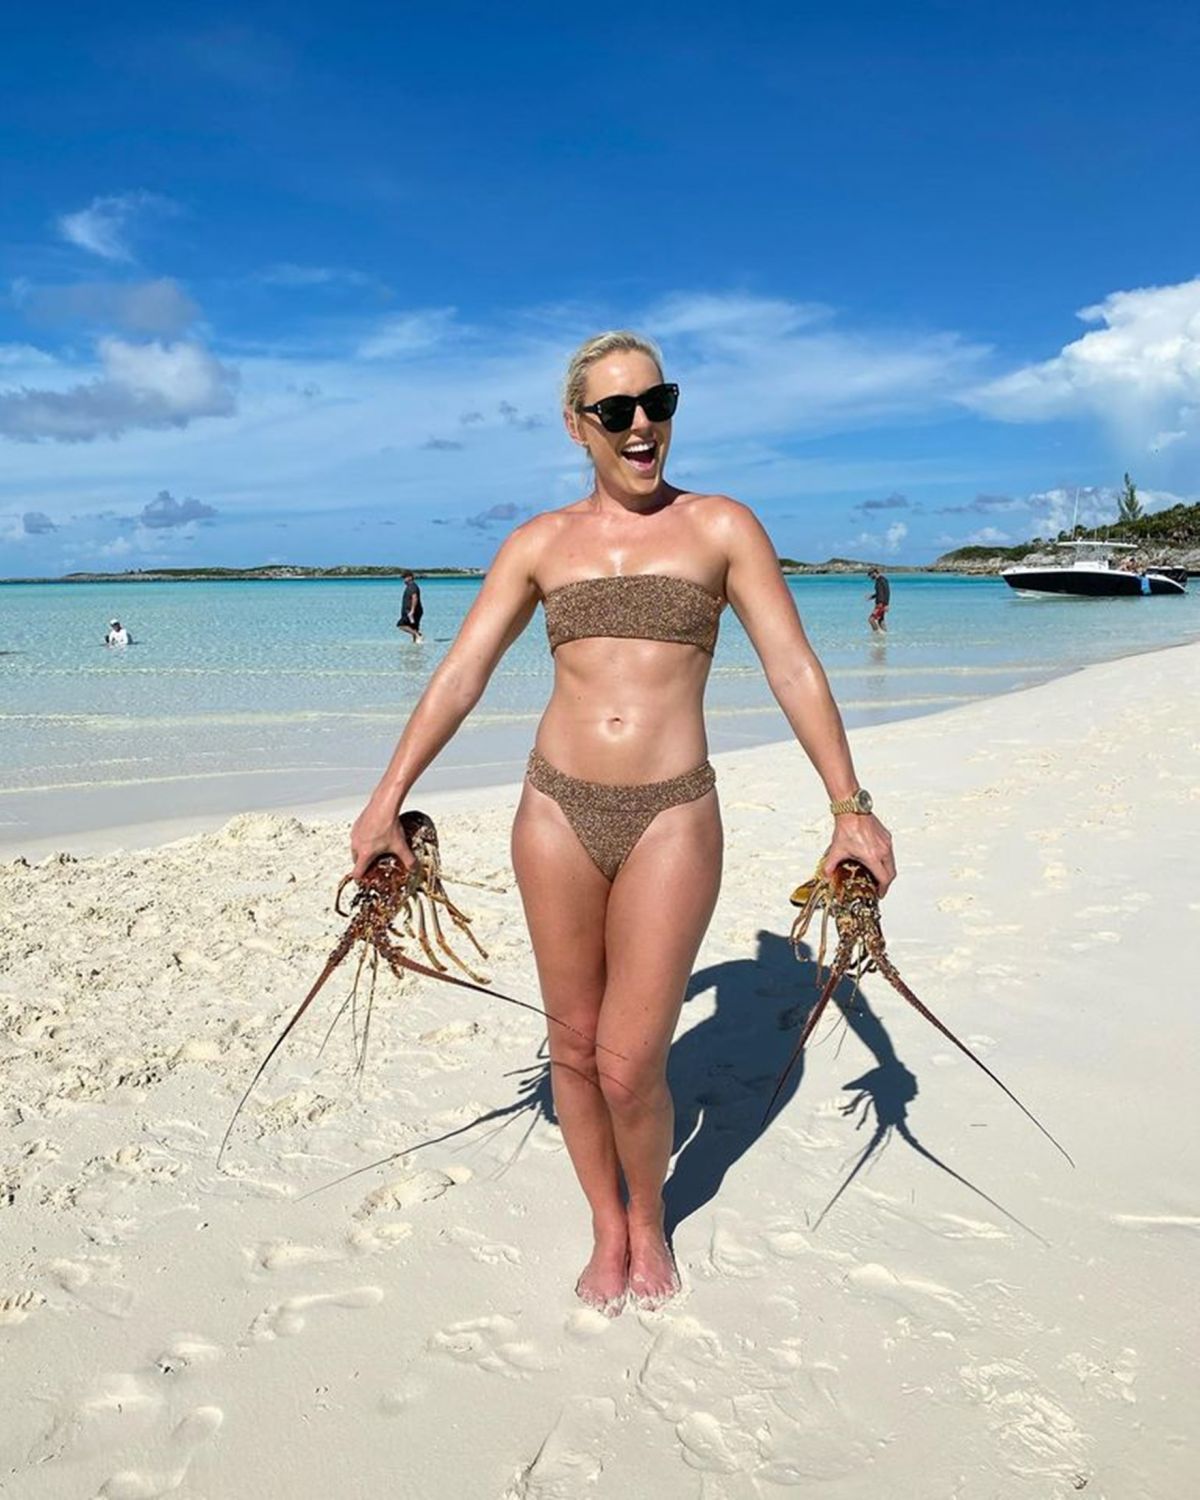 LINDSEY VONN in Bikinis - Instagram Photos 10/20/2020 - Hawt